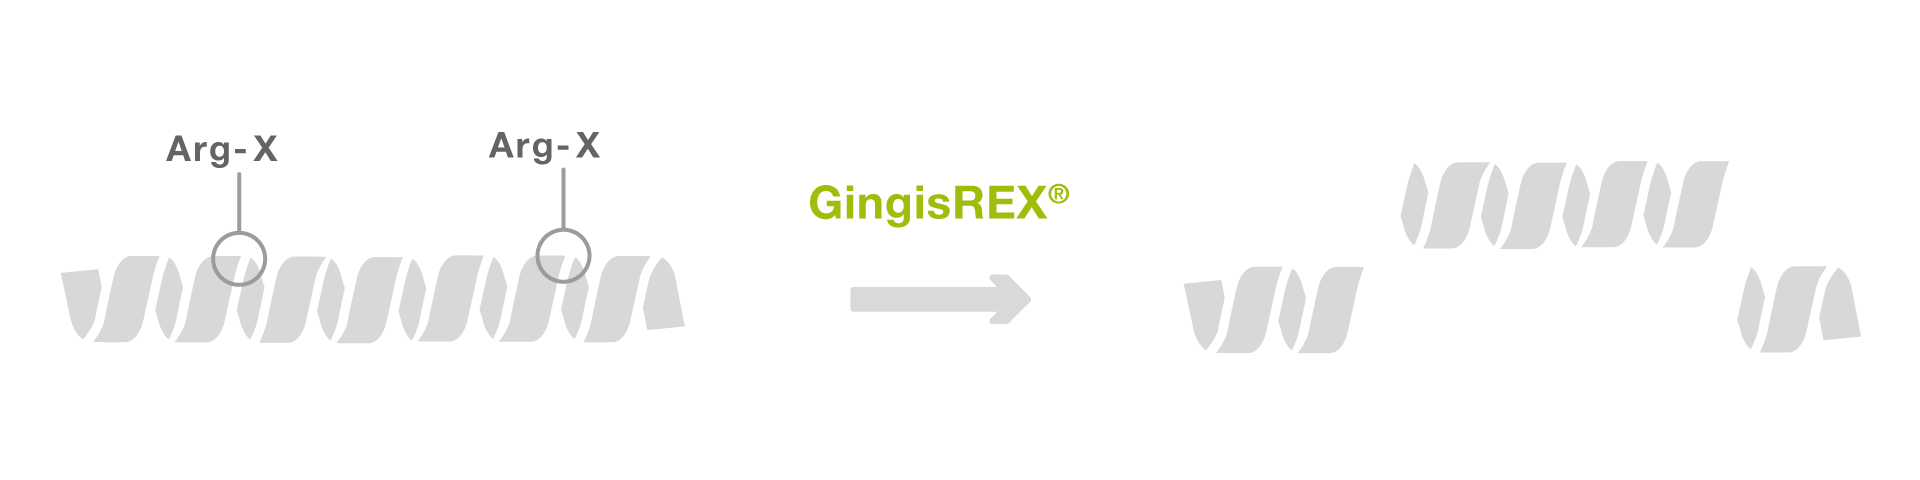 GingisREX workflow